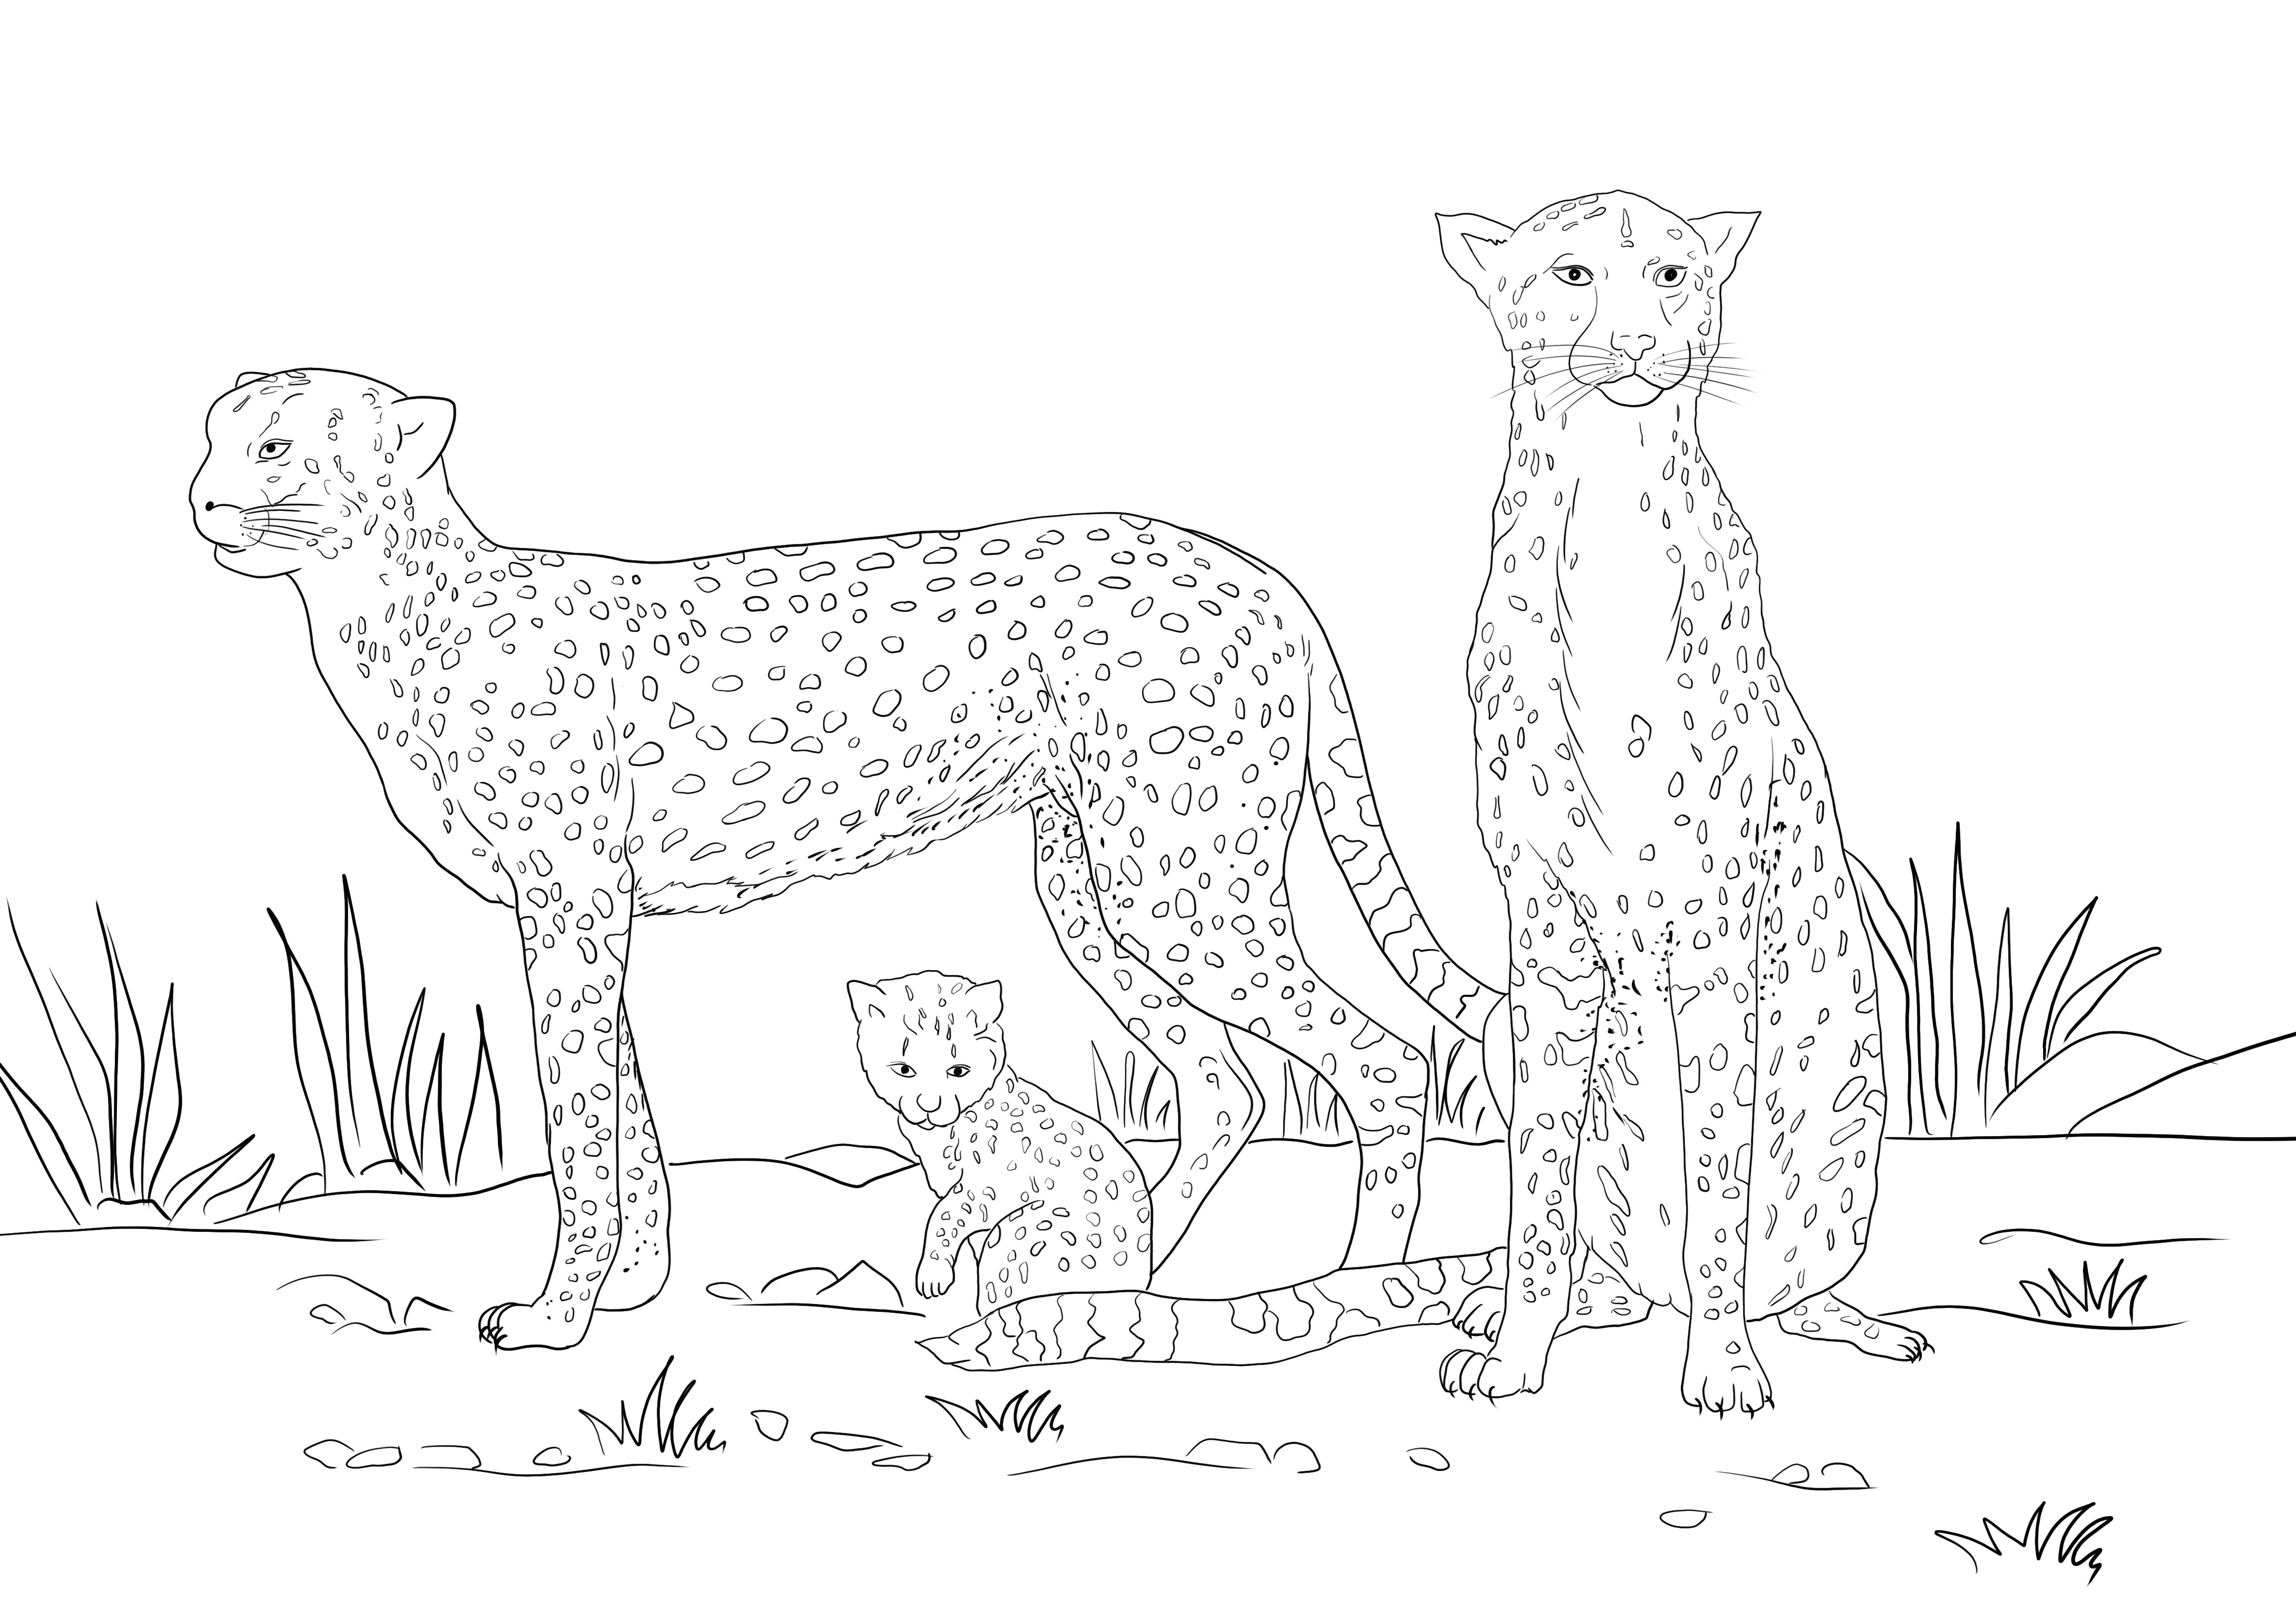 Berikut ini adalah sumber gratis untuk mewarnai gambar keluarga Cheetah yang dapat dicetak secara gratis